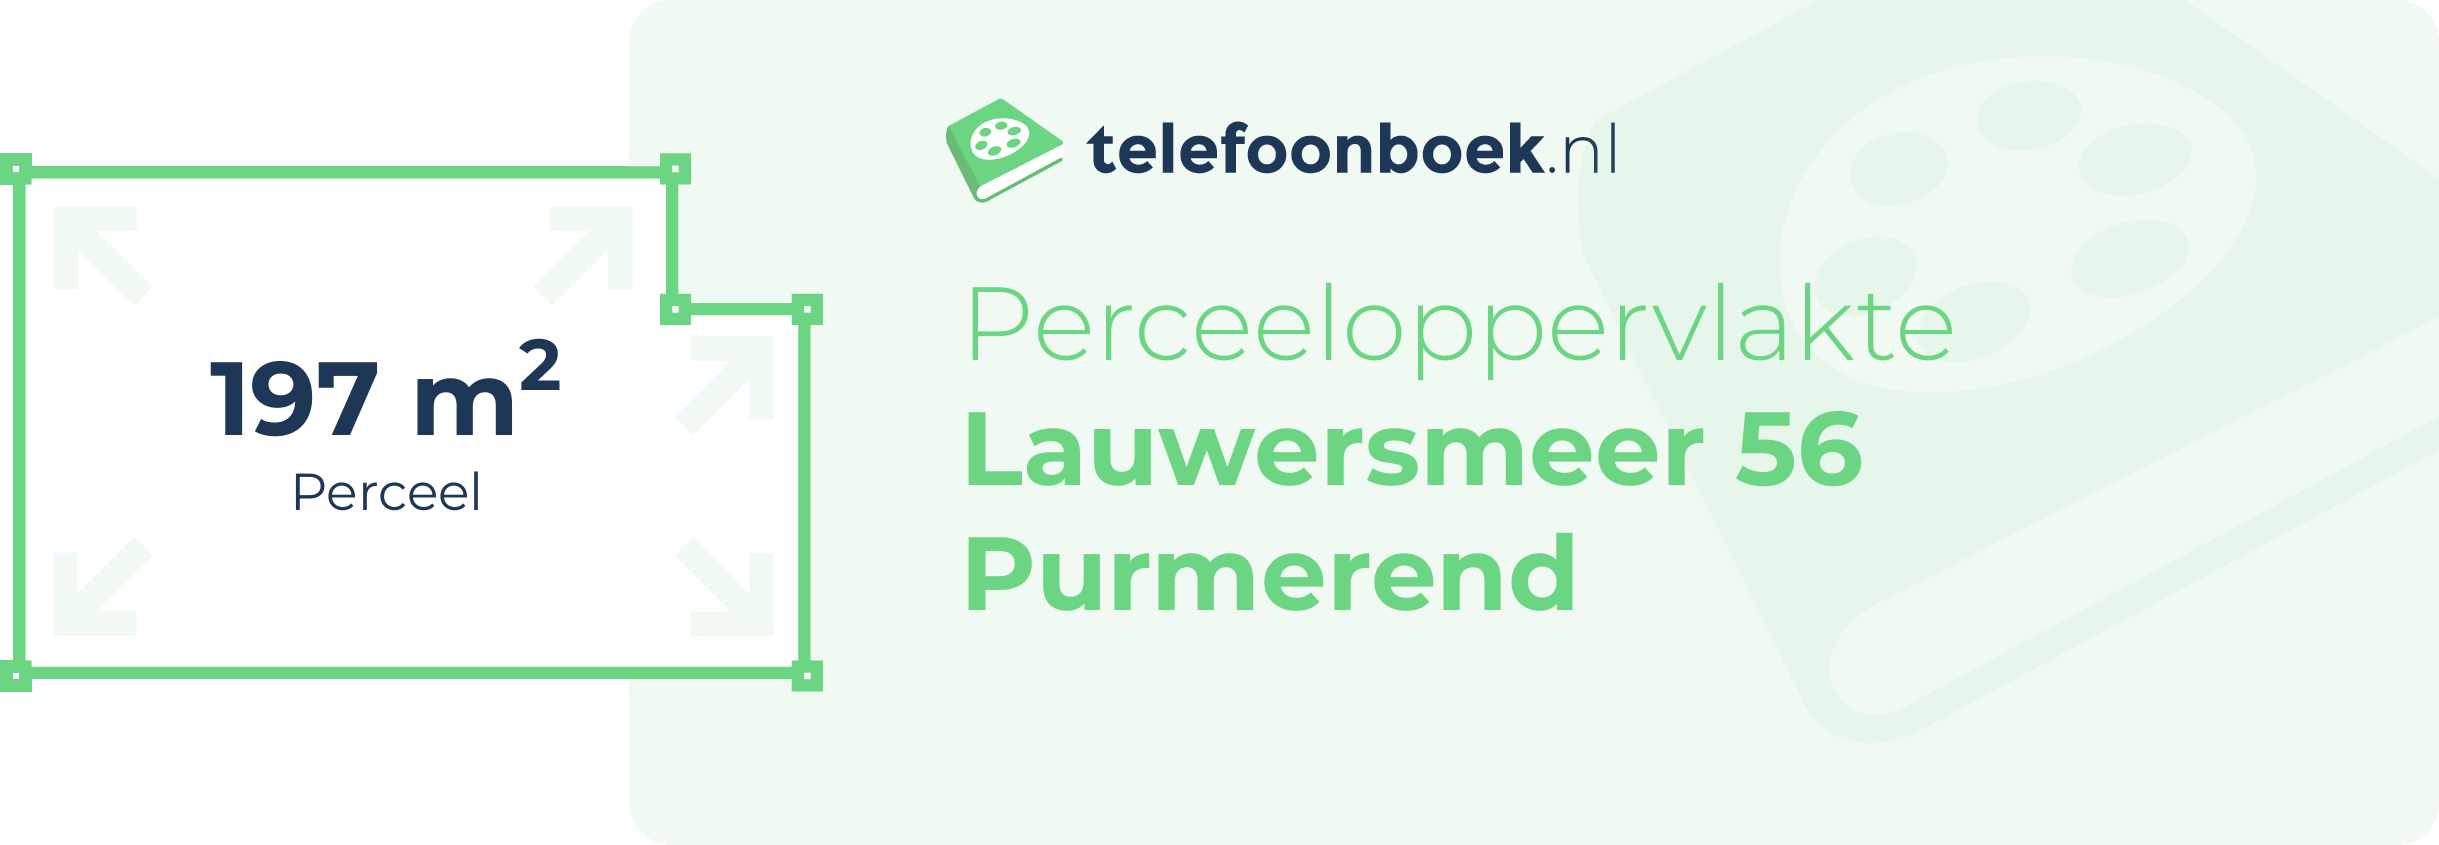 Perceeloppervlakte Lauwersmeer 56 Purmerend